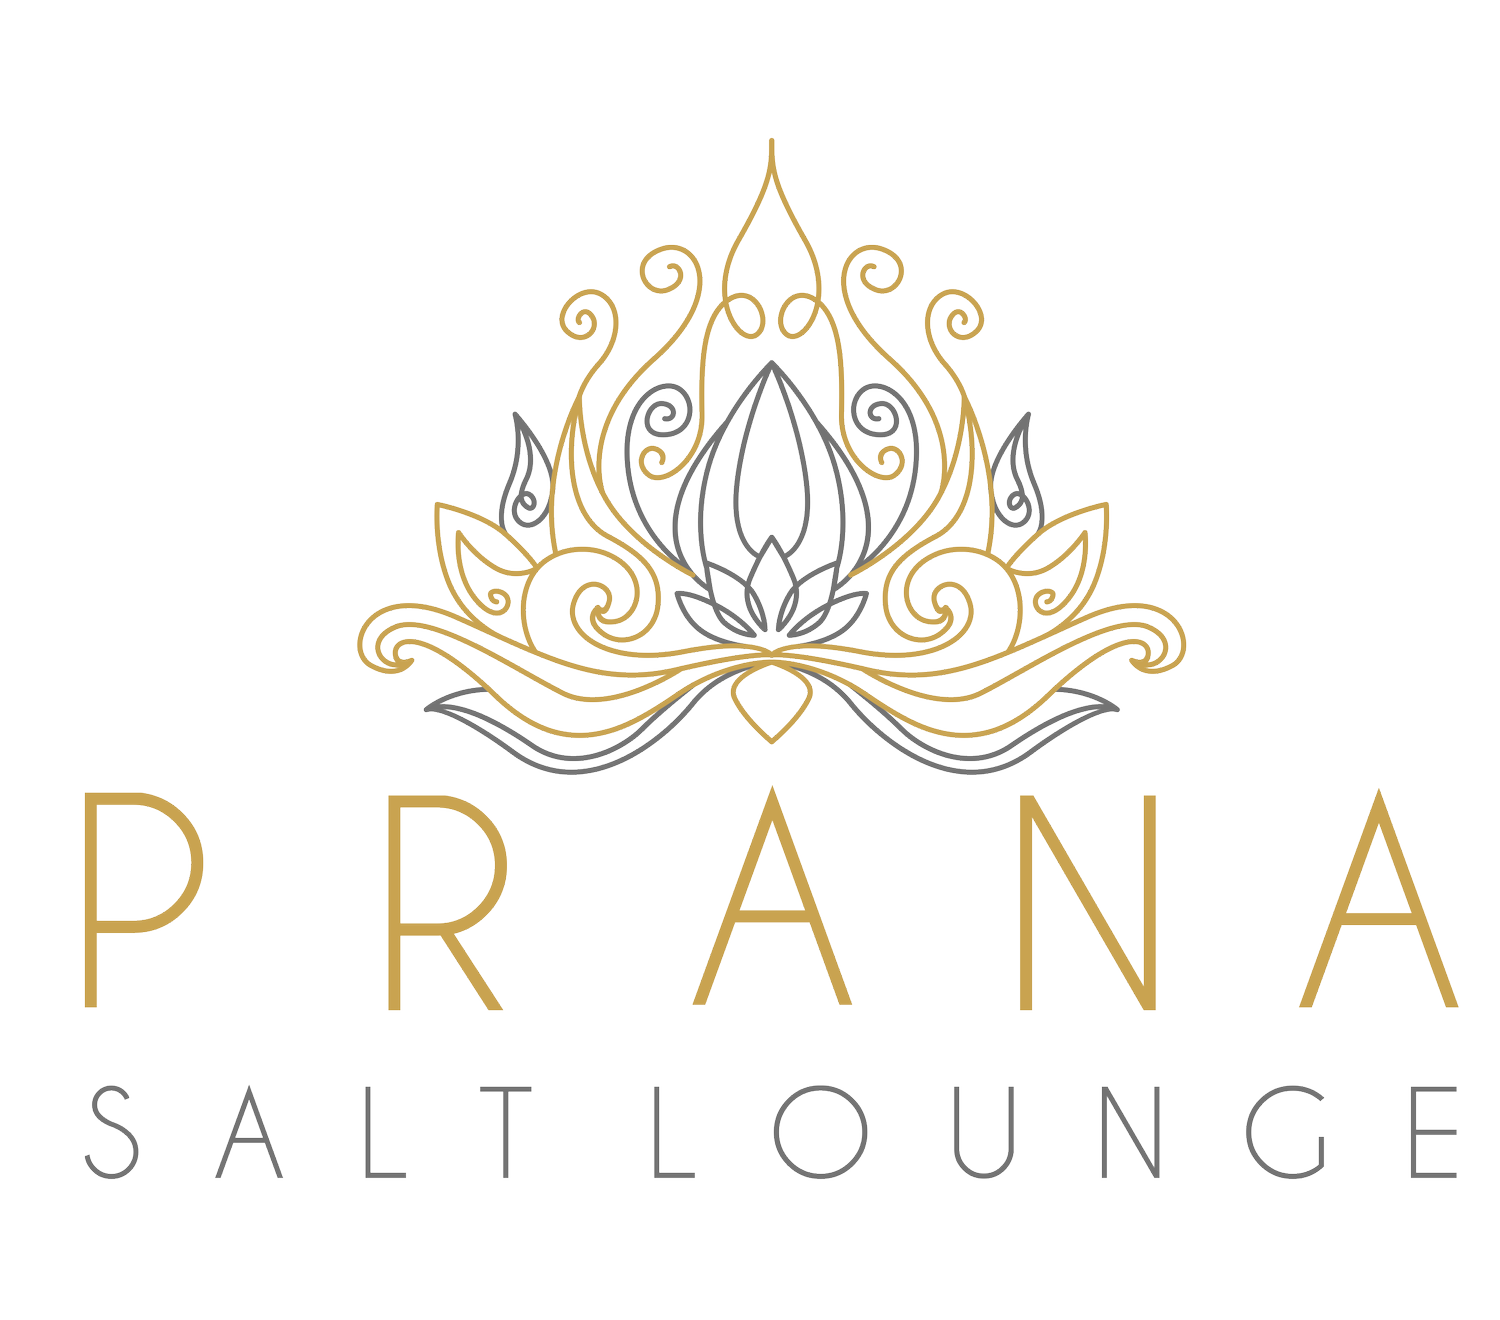 Prana Salt Lounge